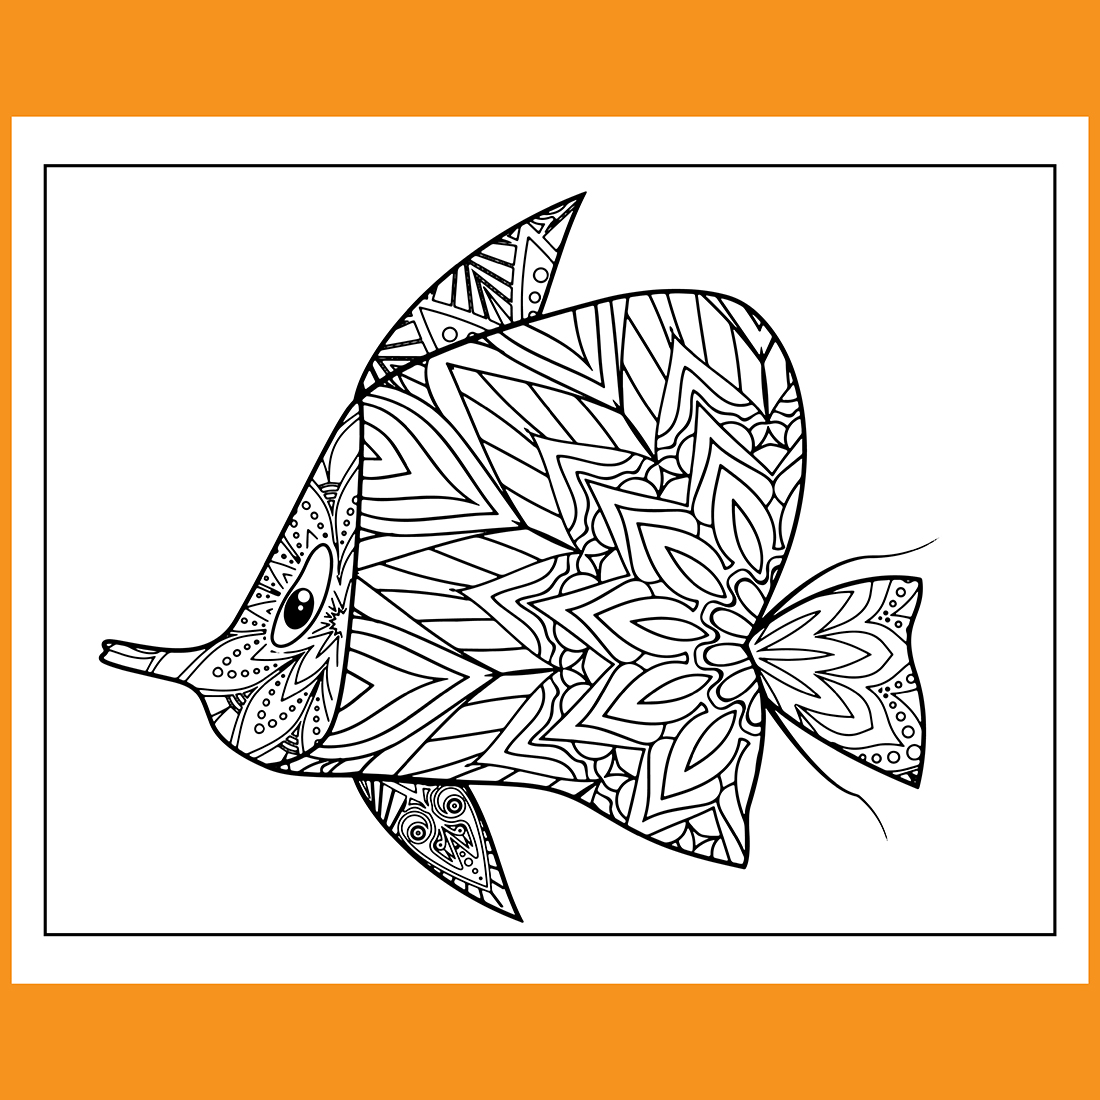 Ocean Fish Mandala Coloring Book cover image.